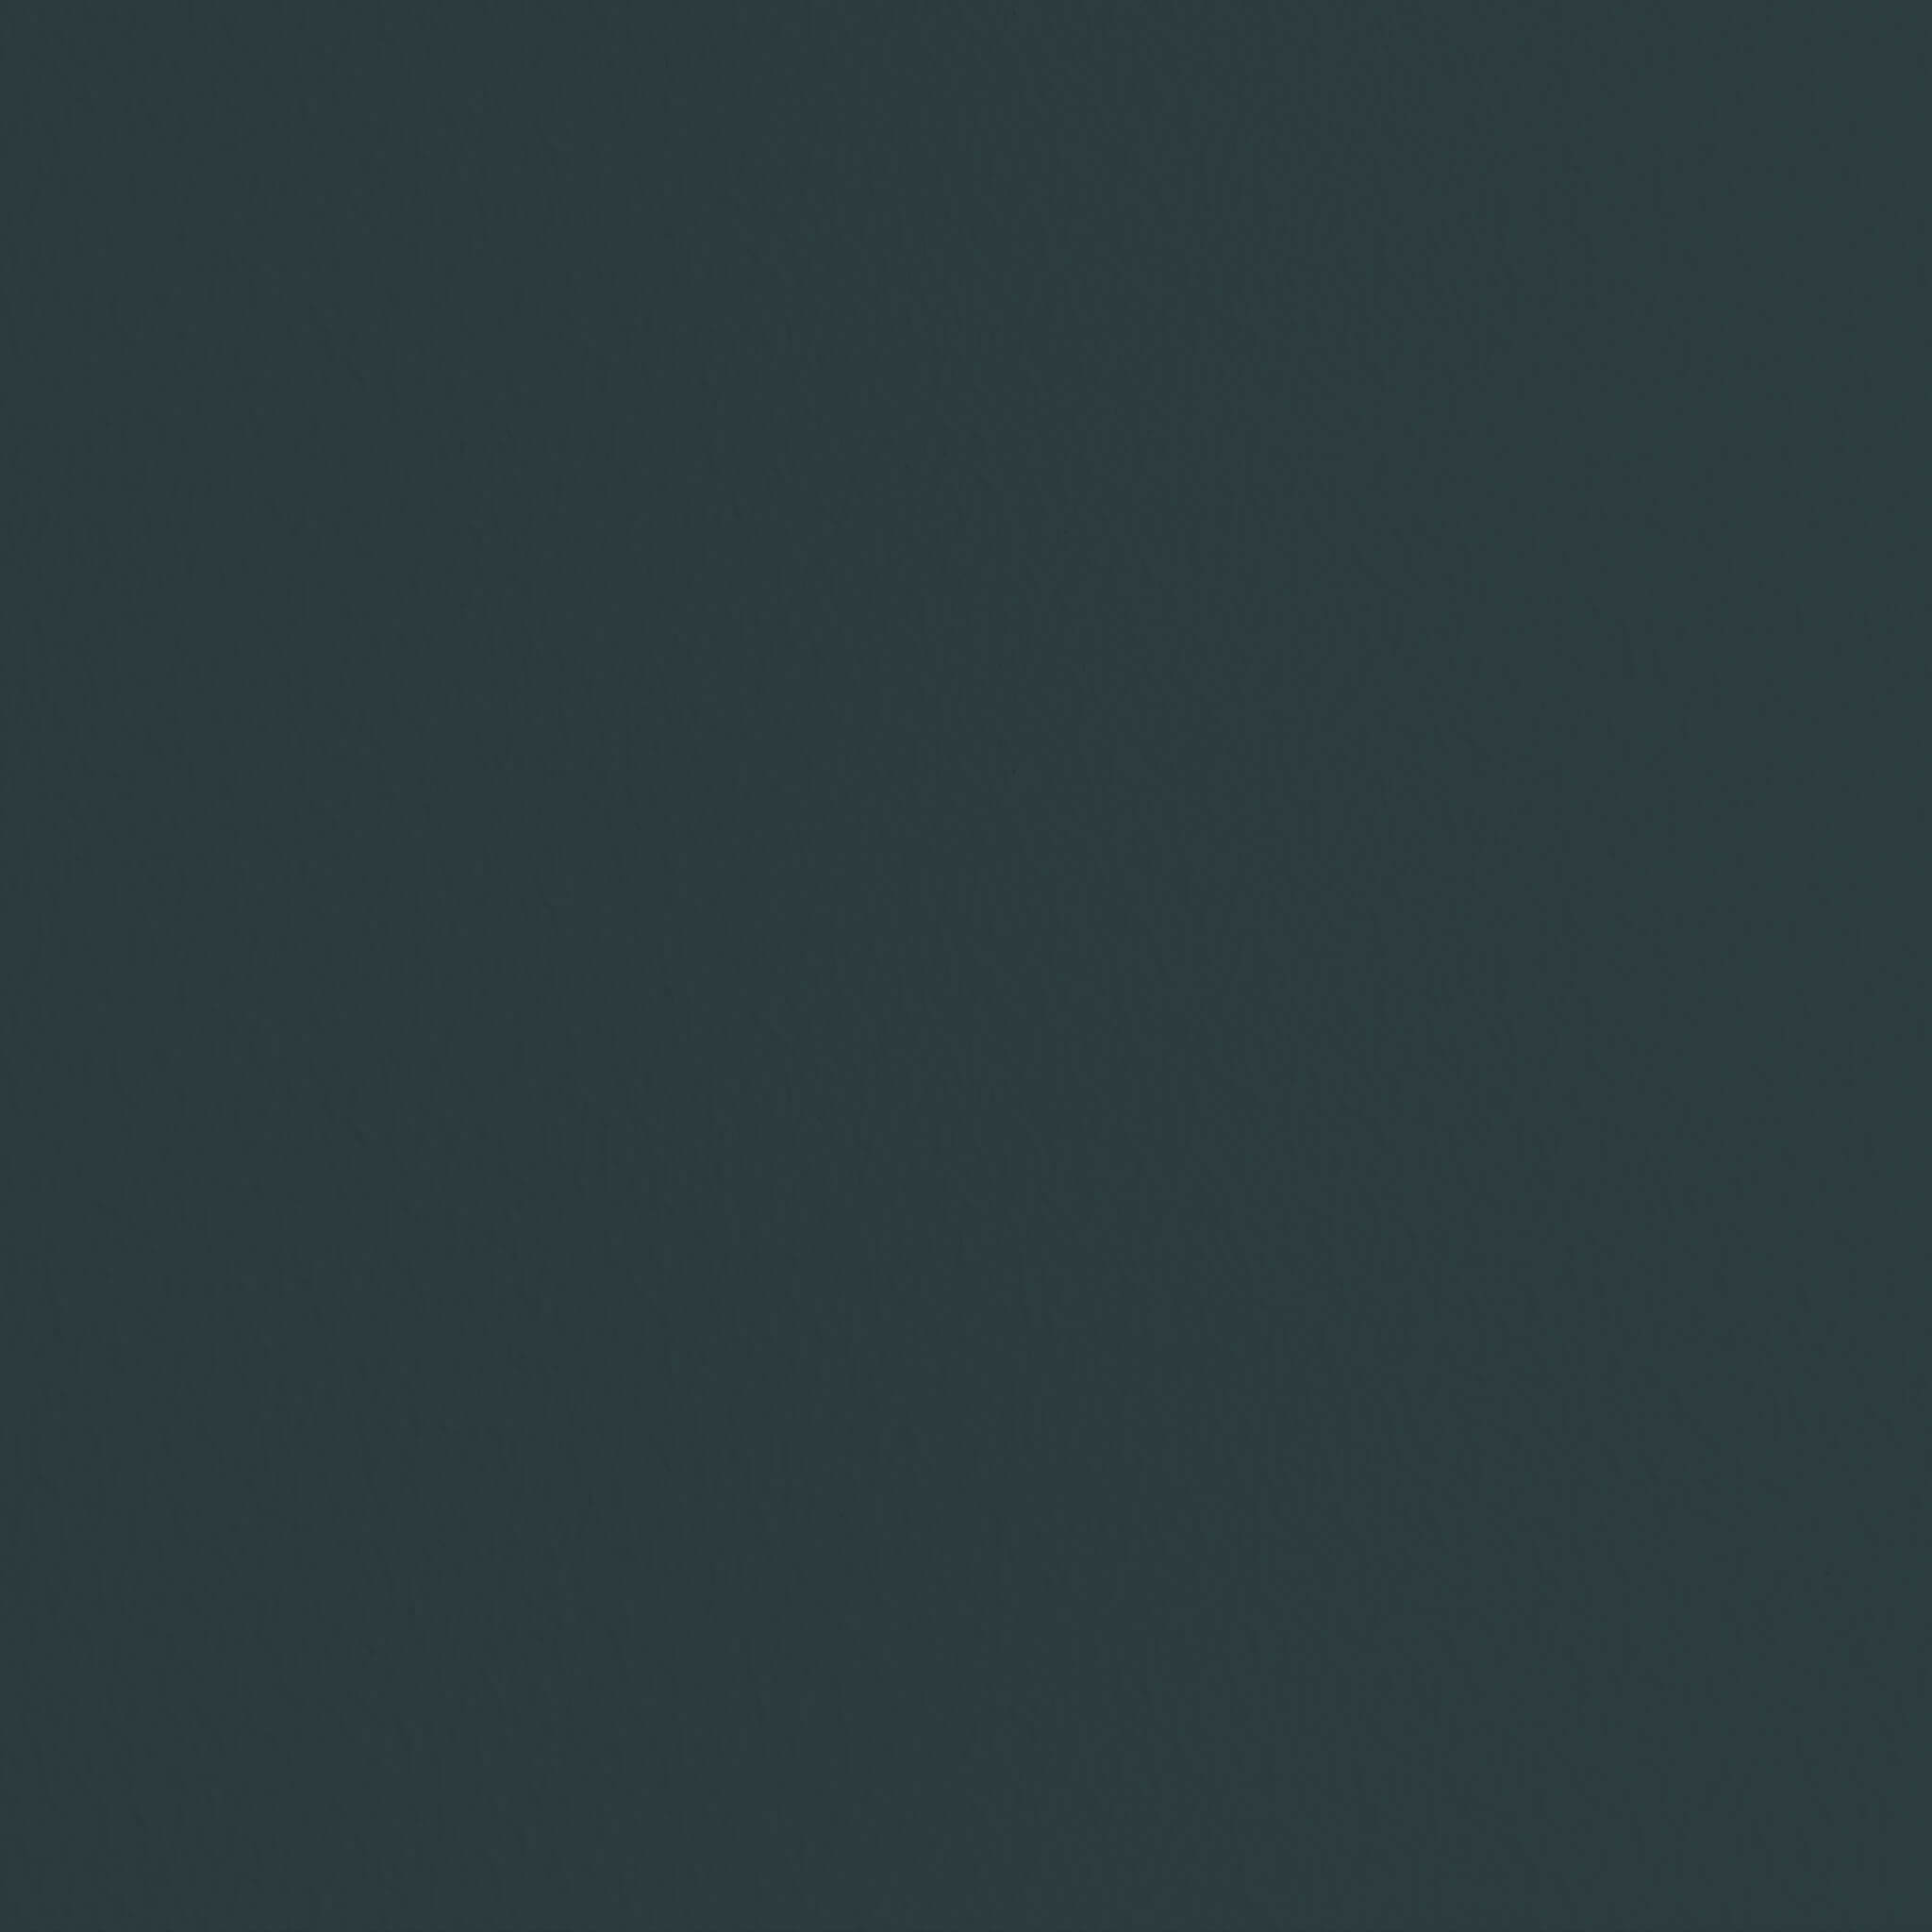 MissPompadour Groen met Zwart - Matte lak 2.5L